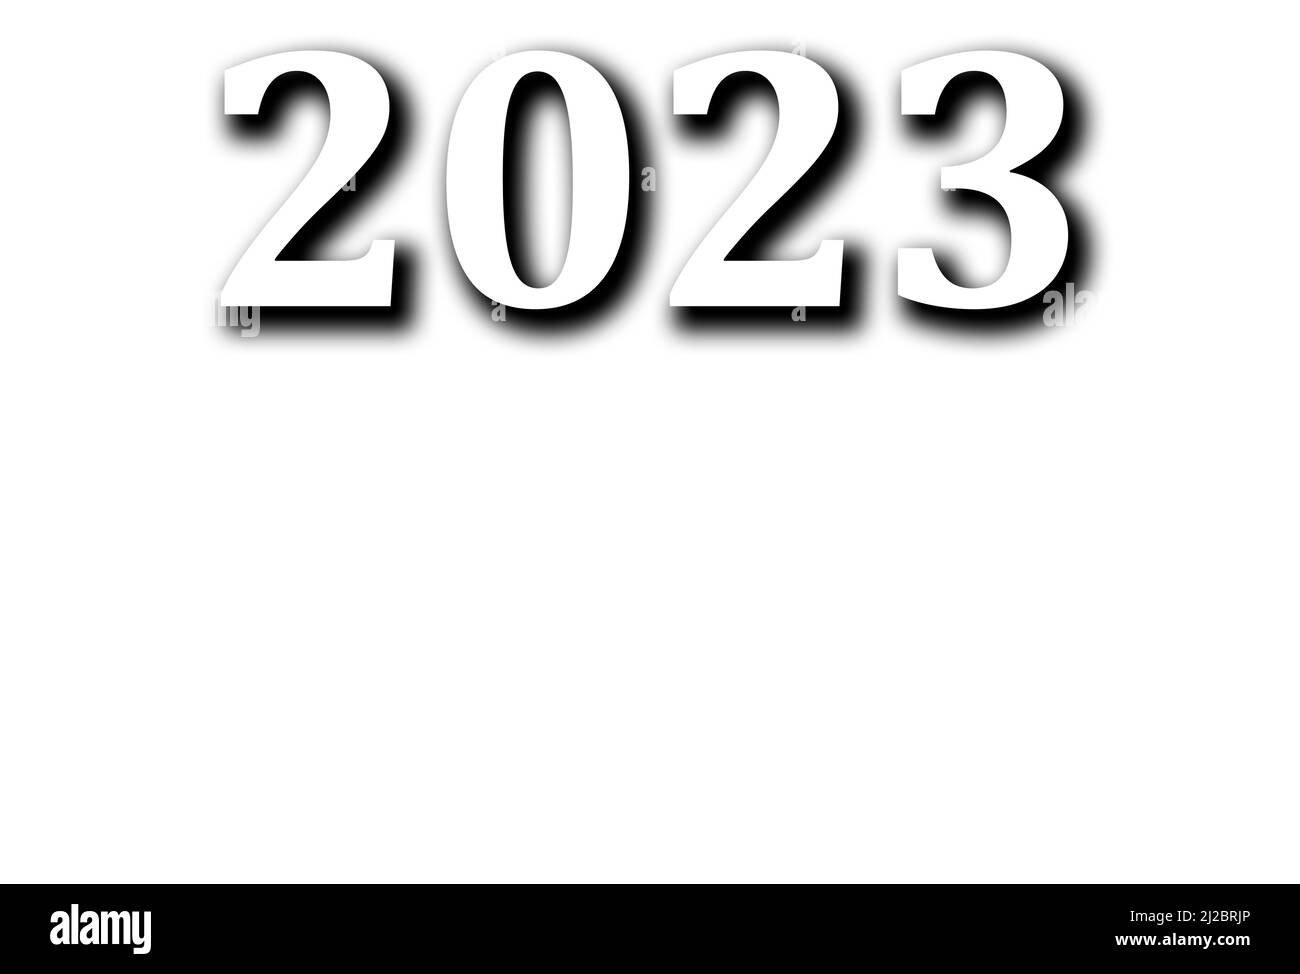 Frohes neues Jahr 2023 Text-Design. Business Tagebuch Cover für 2023 mit Wünschen. Designvorlage für Broschüre, Karte, Poster. Abbildung. Stockfoto